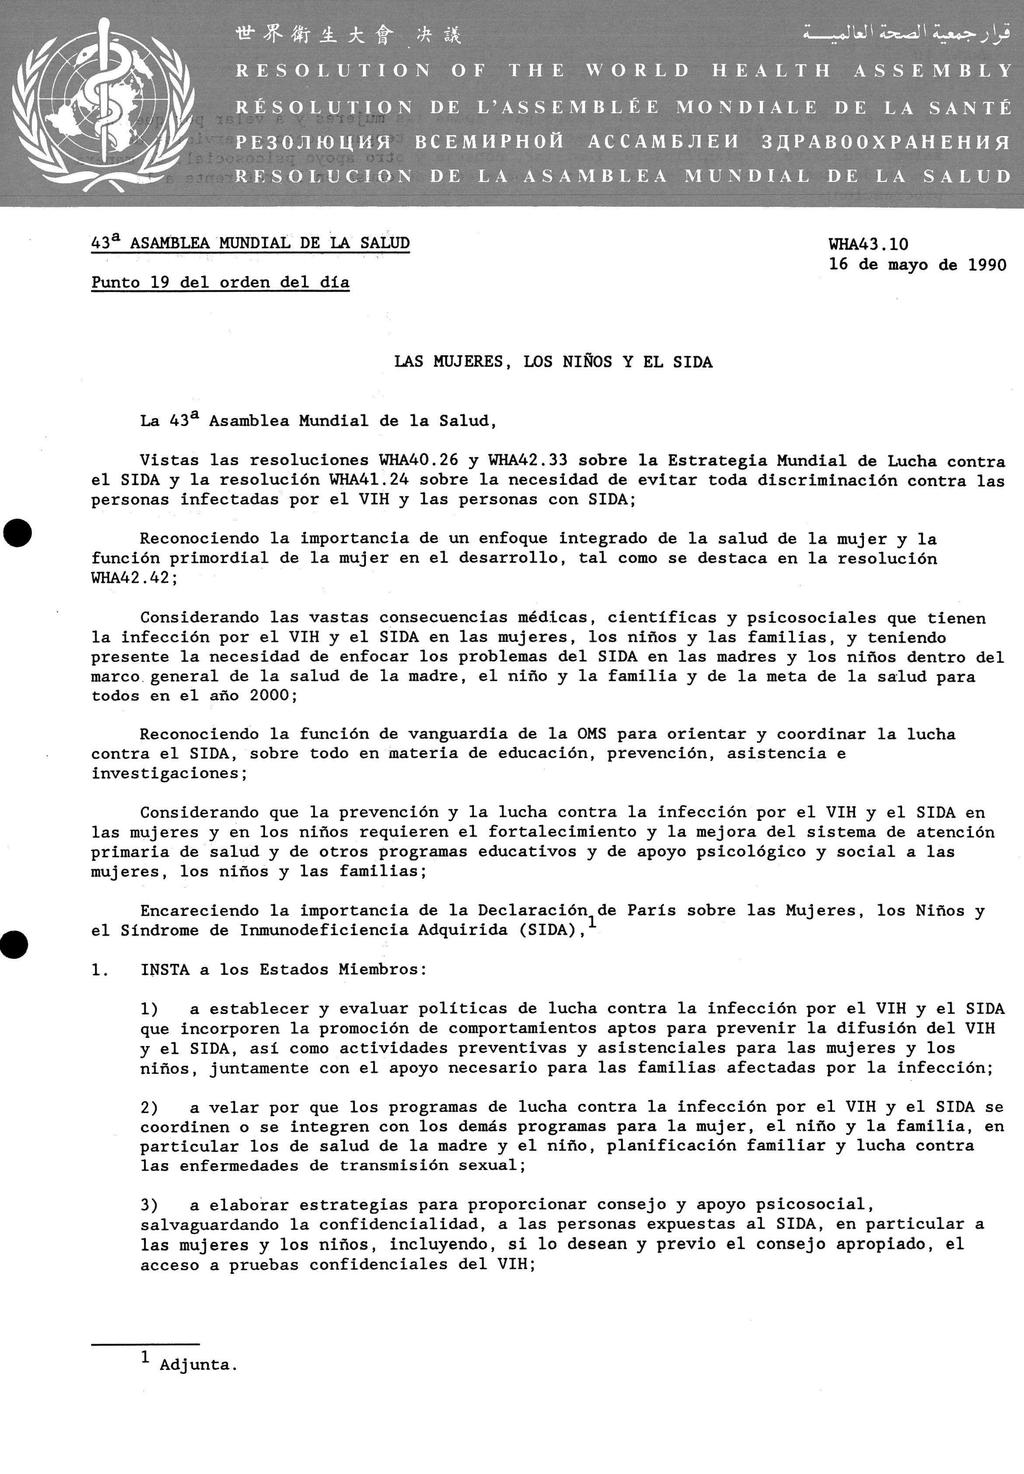 43 a ASAMBLEA MUNDIAL DE LA SALUD Punto 19 del orden del día WHA43 10 16 de mayo de 1990 LAS MUJERES, LOS NIÑOS Y EL SIDA La 43 a Asamblea Mundial de la Salud, Vistas las resoluciones WHA40.